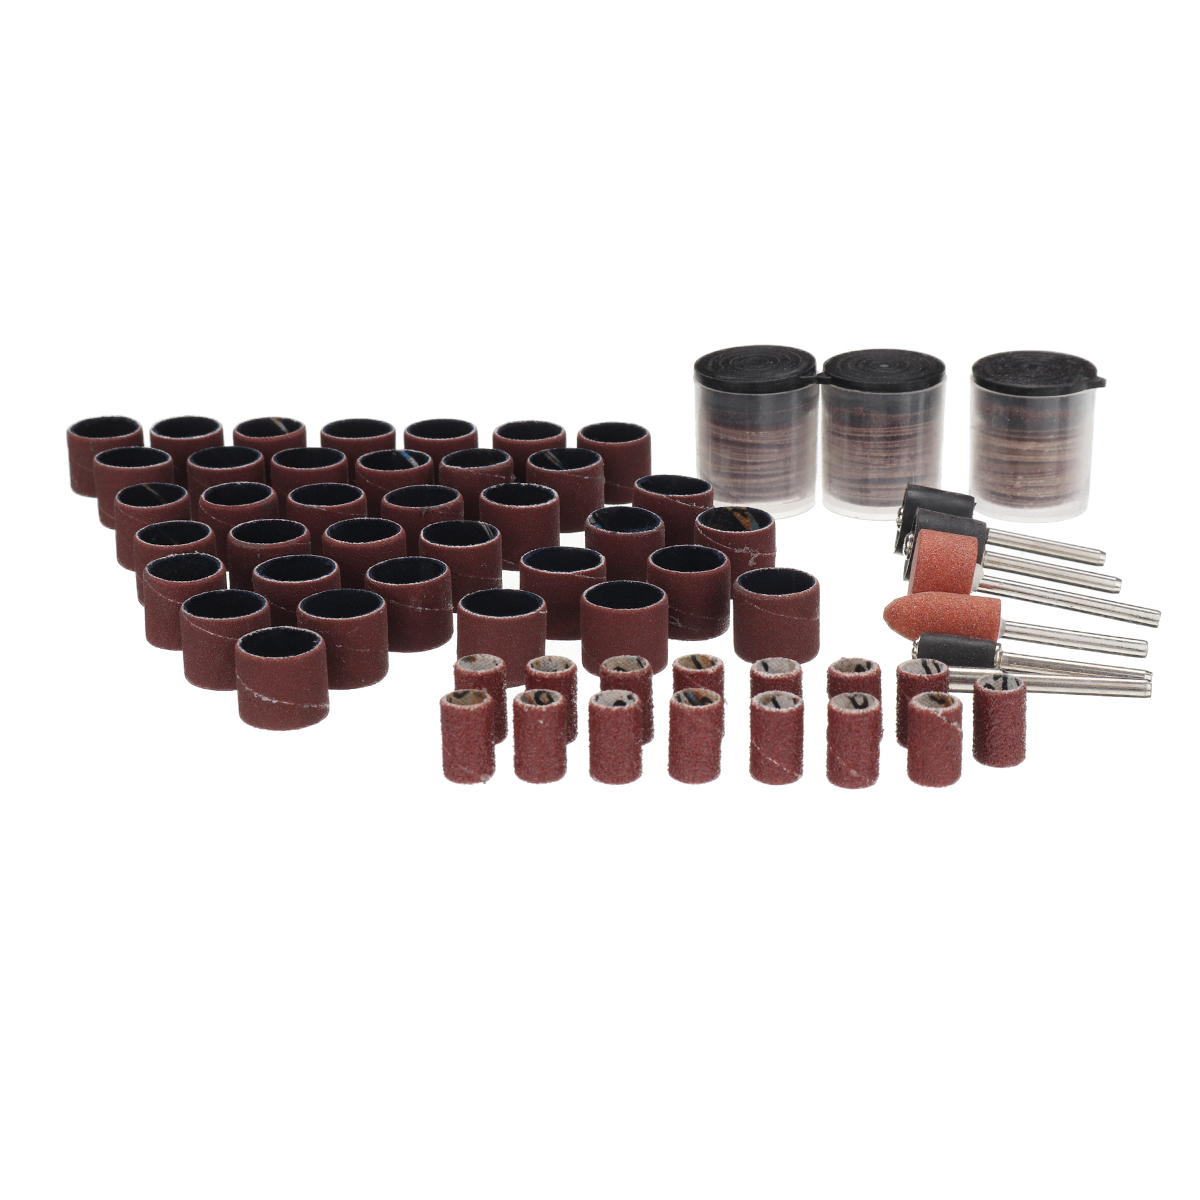 Drillpro-Abrasive-Tools-Sanding-Bands-Set-206pcs-Sanding-Drum-Set-With-Sanding-Mandrels-For-Dremel-R-1803515-2